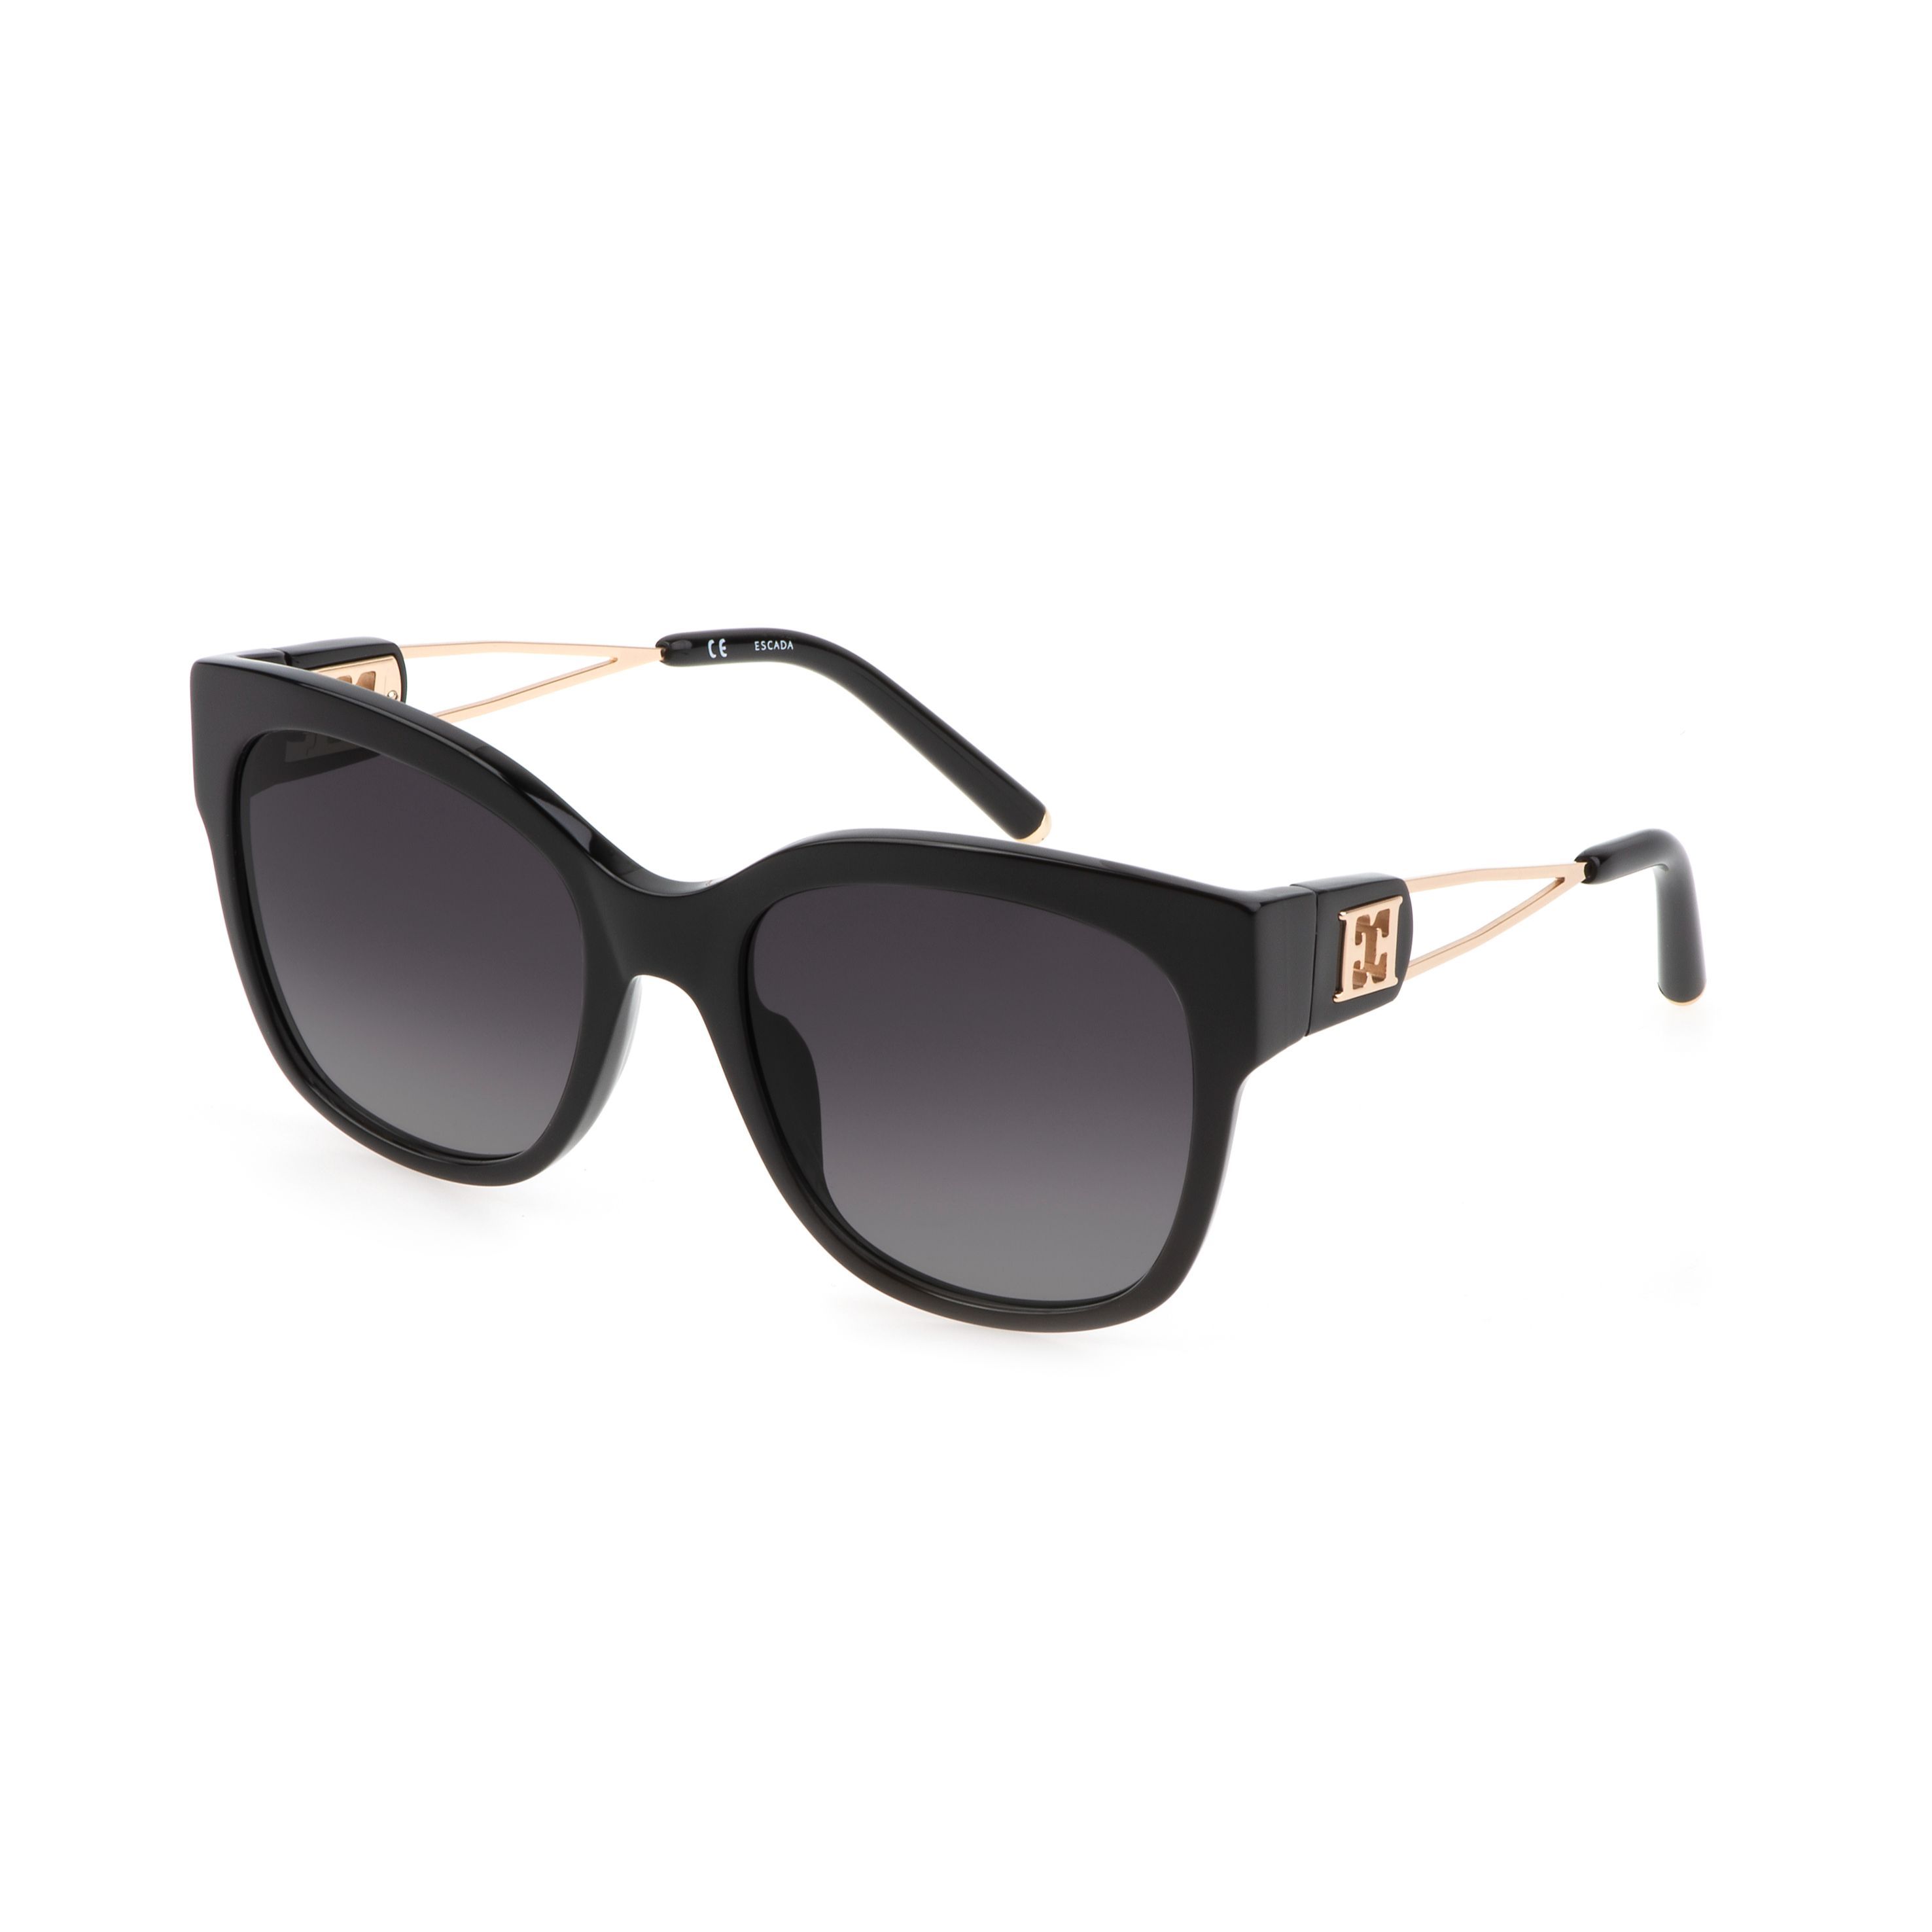 SESD32 Square Sunglasses 700 - size 55